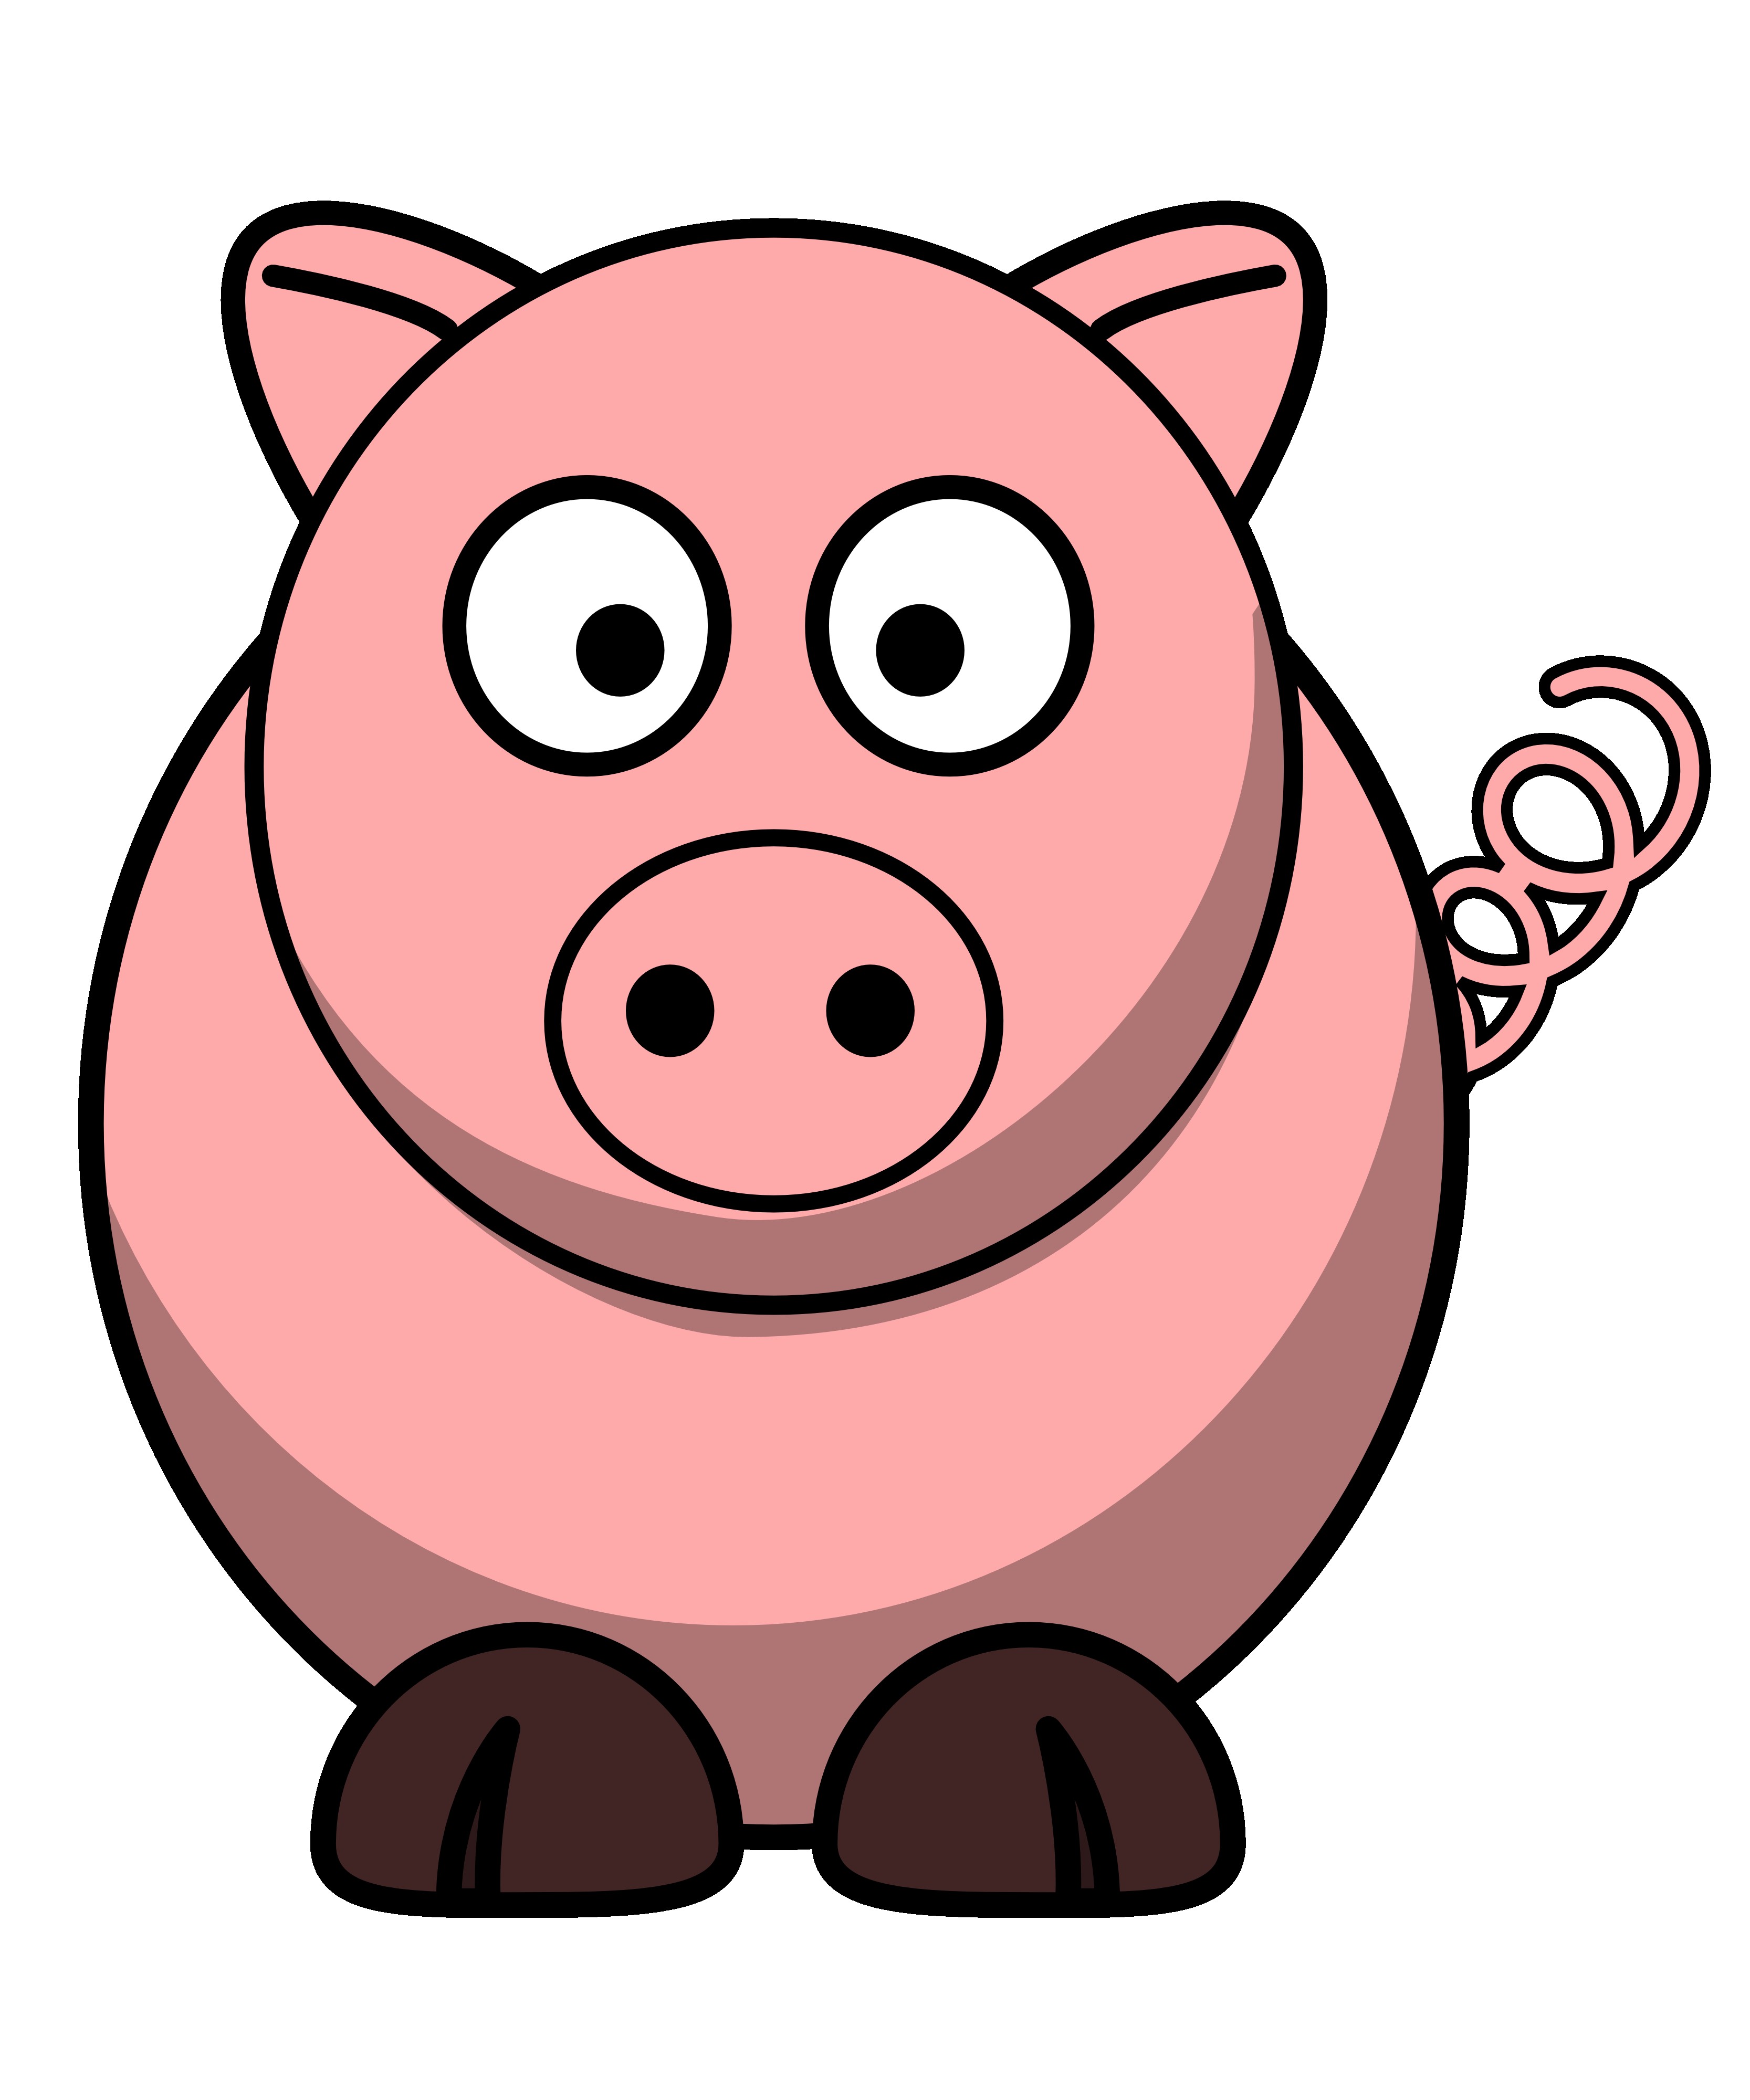 Pig Clip Art - Pig Clip Art